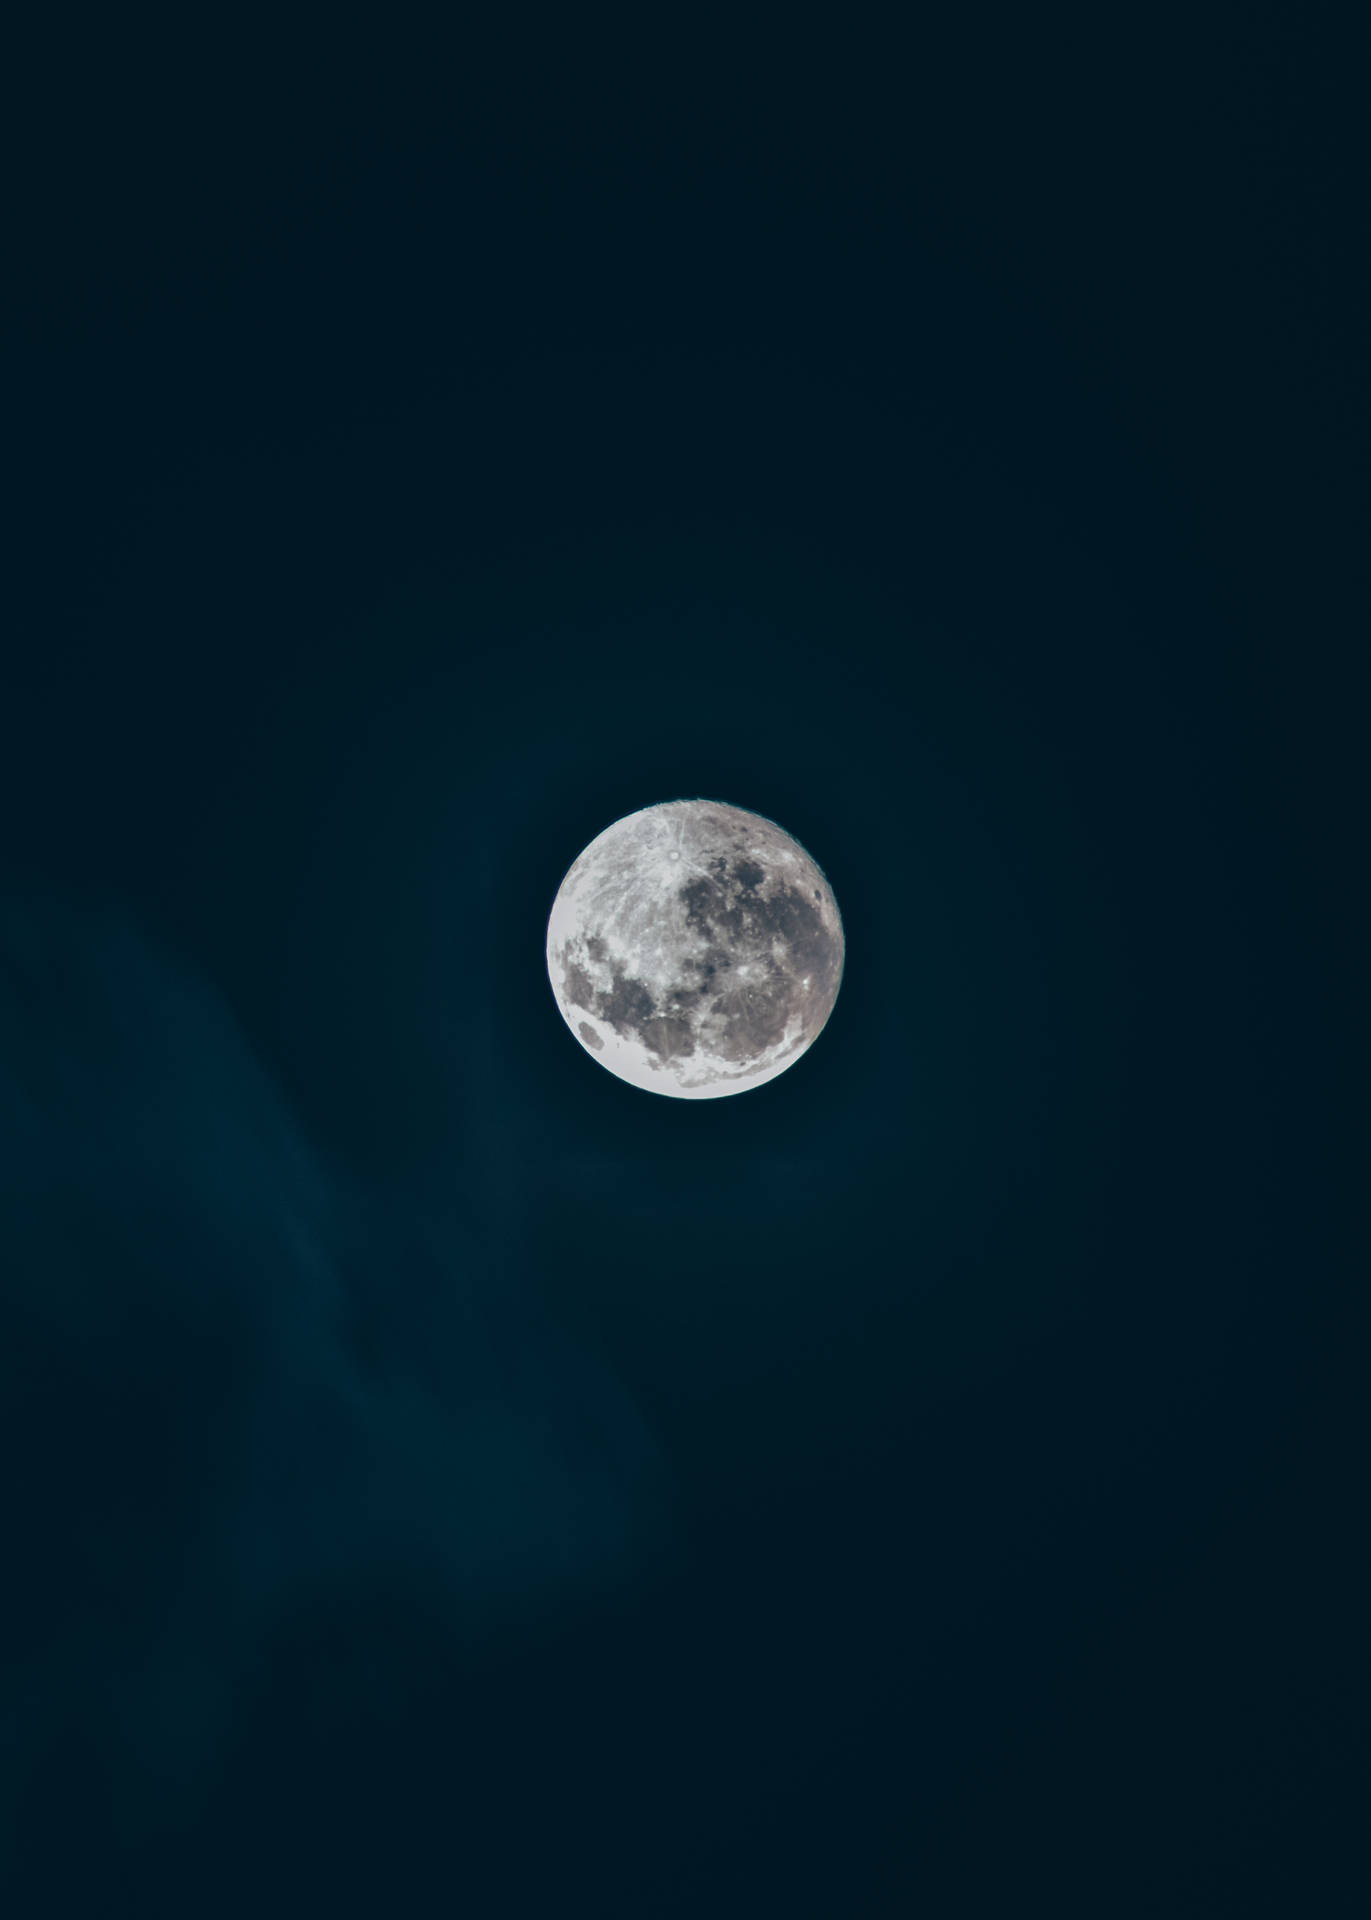 Beautiful Full Moon Clear Night Sky